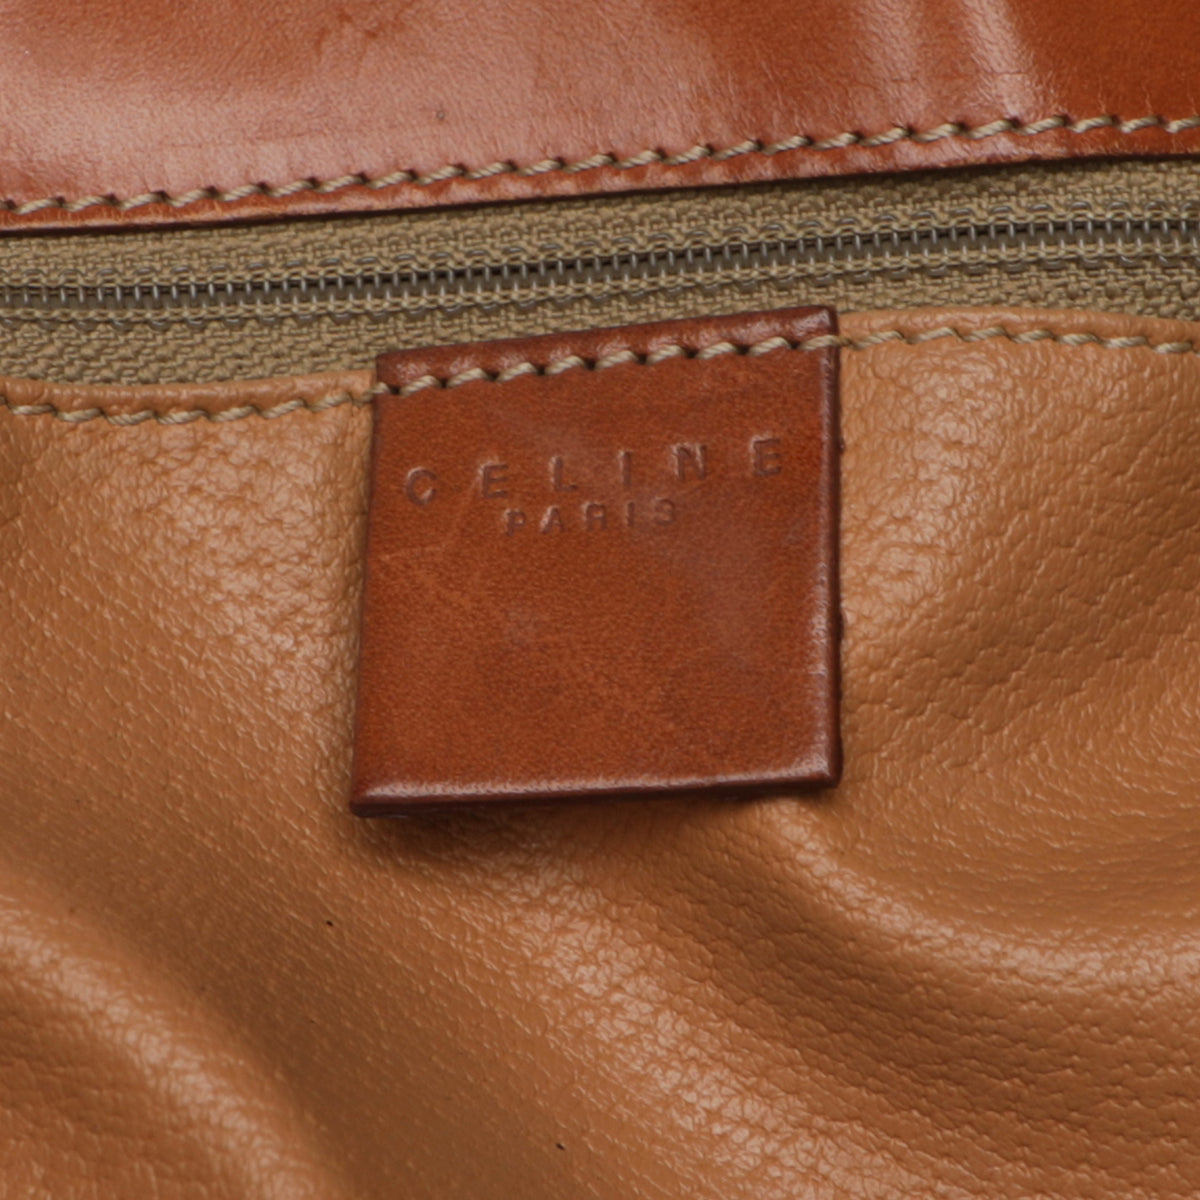 Celine Y2K Macadam Monogram Leather Shoulder Tote Top Handle Bag